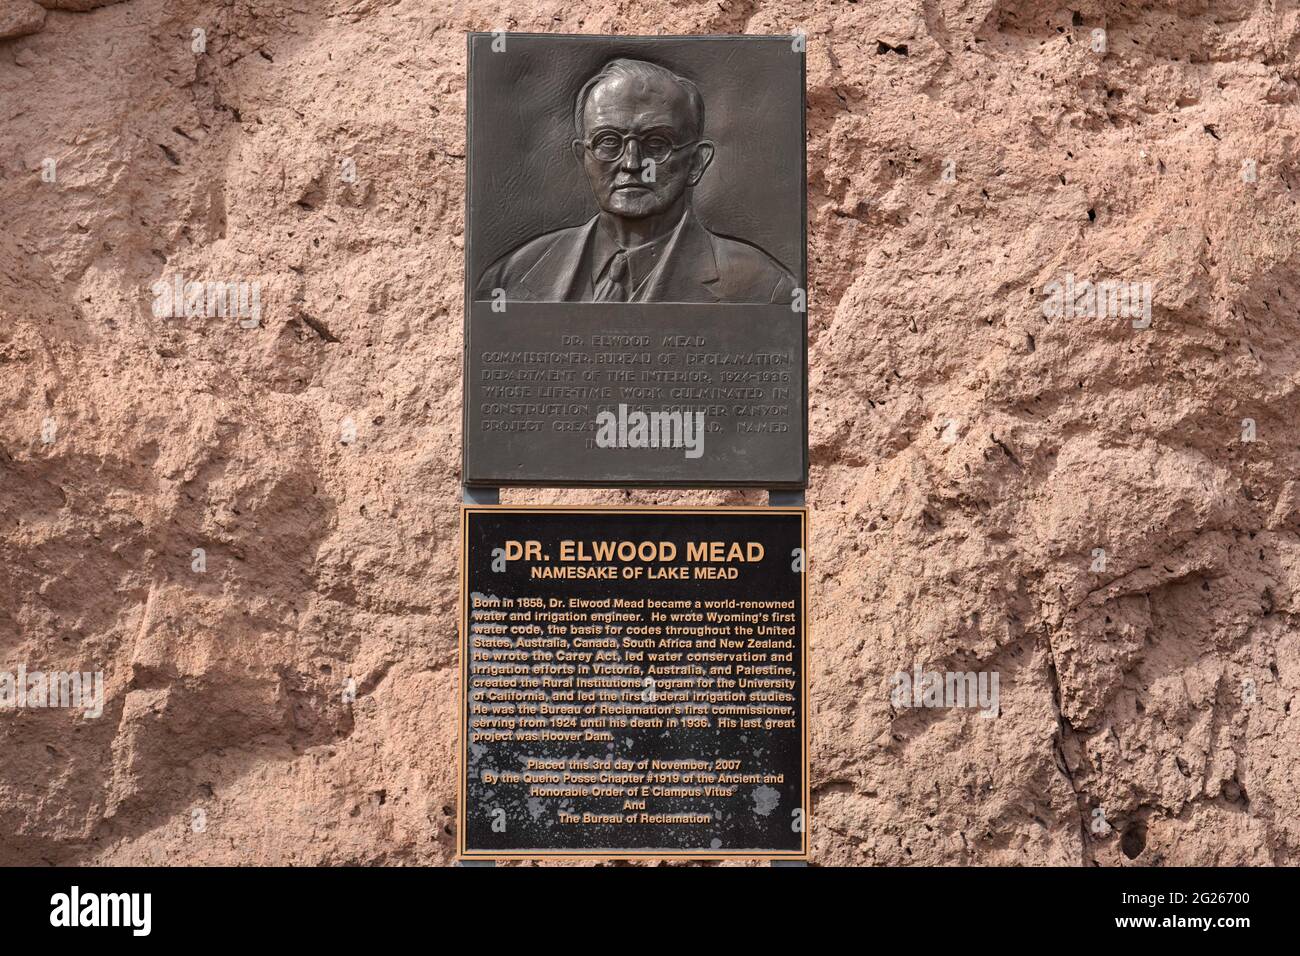 Eine Gedenktafel zu Ehren von Dr. Elwood Mead am Hoover-Staudamm, Sonntag, 7. März 2021, in der Nähe von Boulder City, Nev. Stockfoto